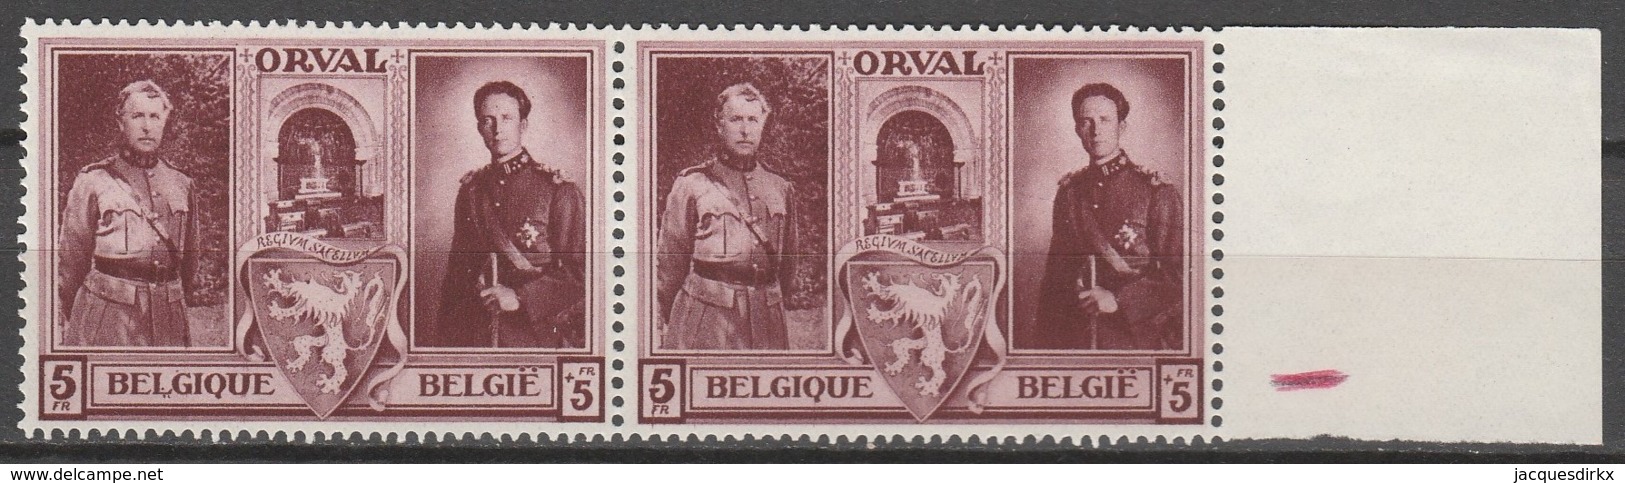 Belgie  .   OBP  .    518-V1  Paar      .    **    .  Postfris  .   /   .  Neuf SANS Charniere - Unused Stamps